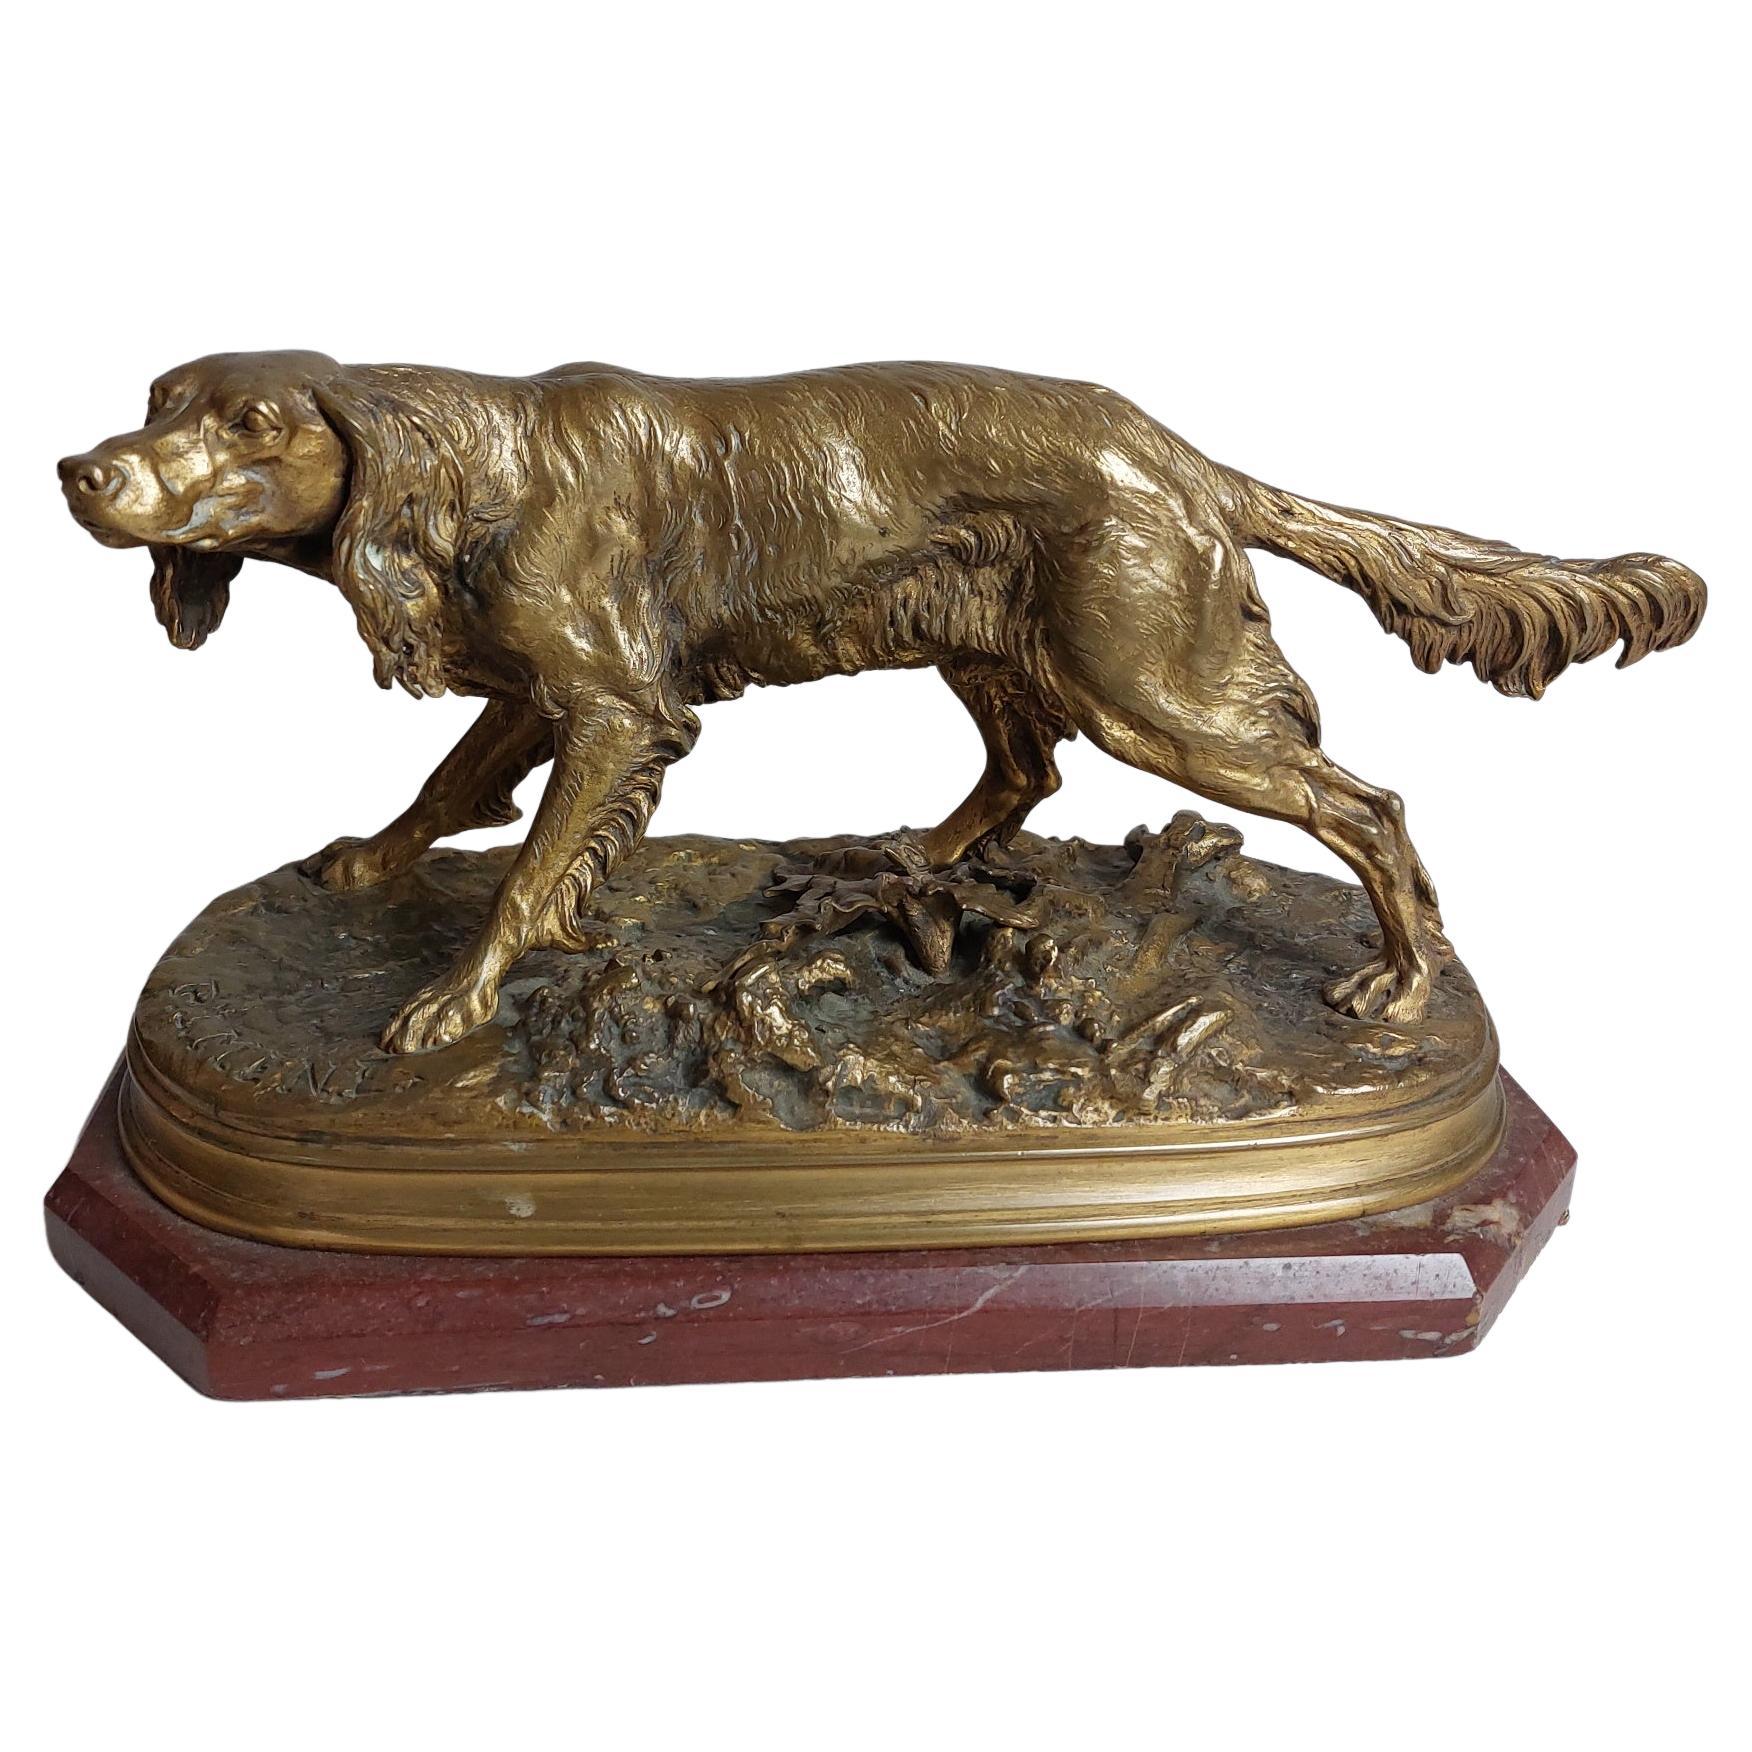 Bronze français du 19e siècle représentant un chien de type épagneul. Signé P J Mene